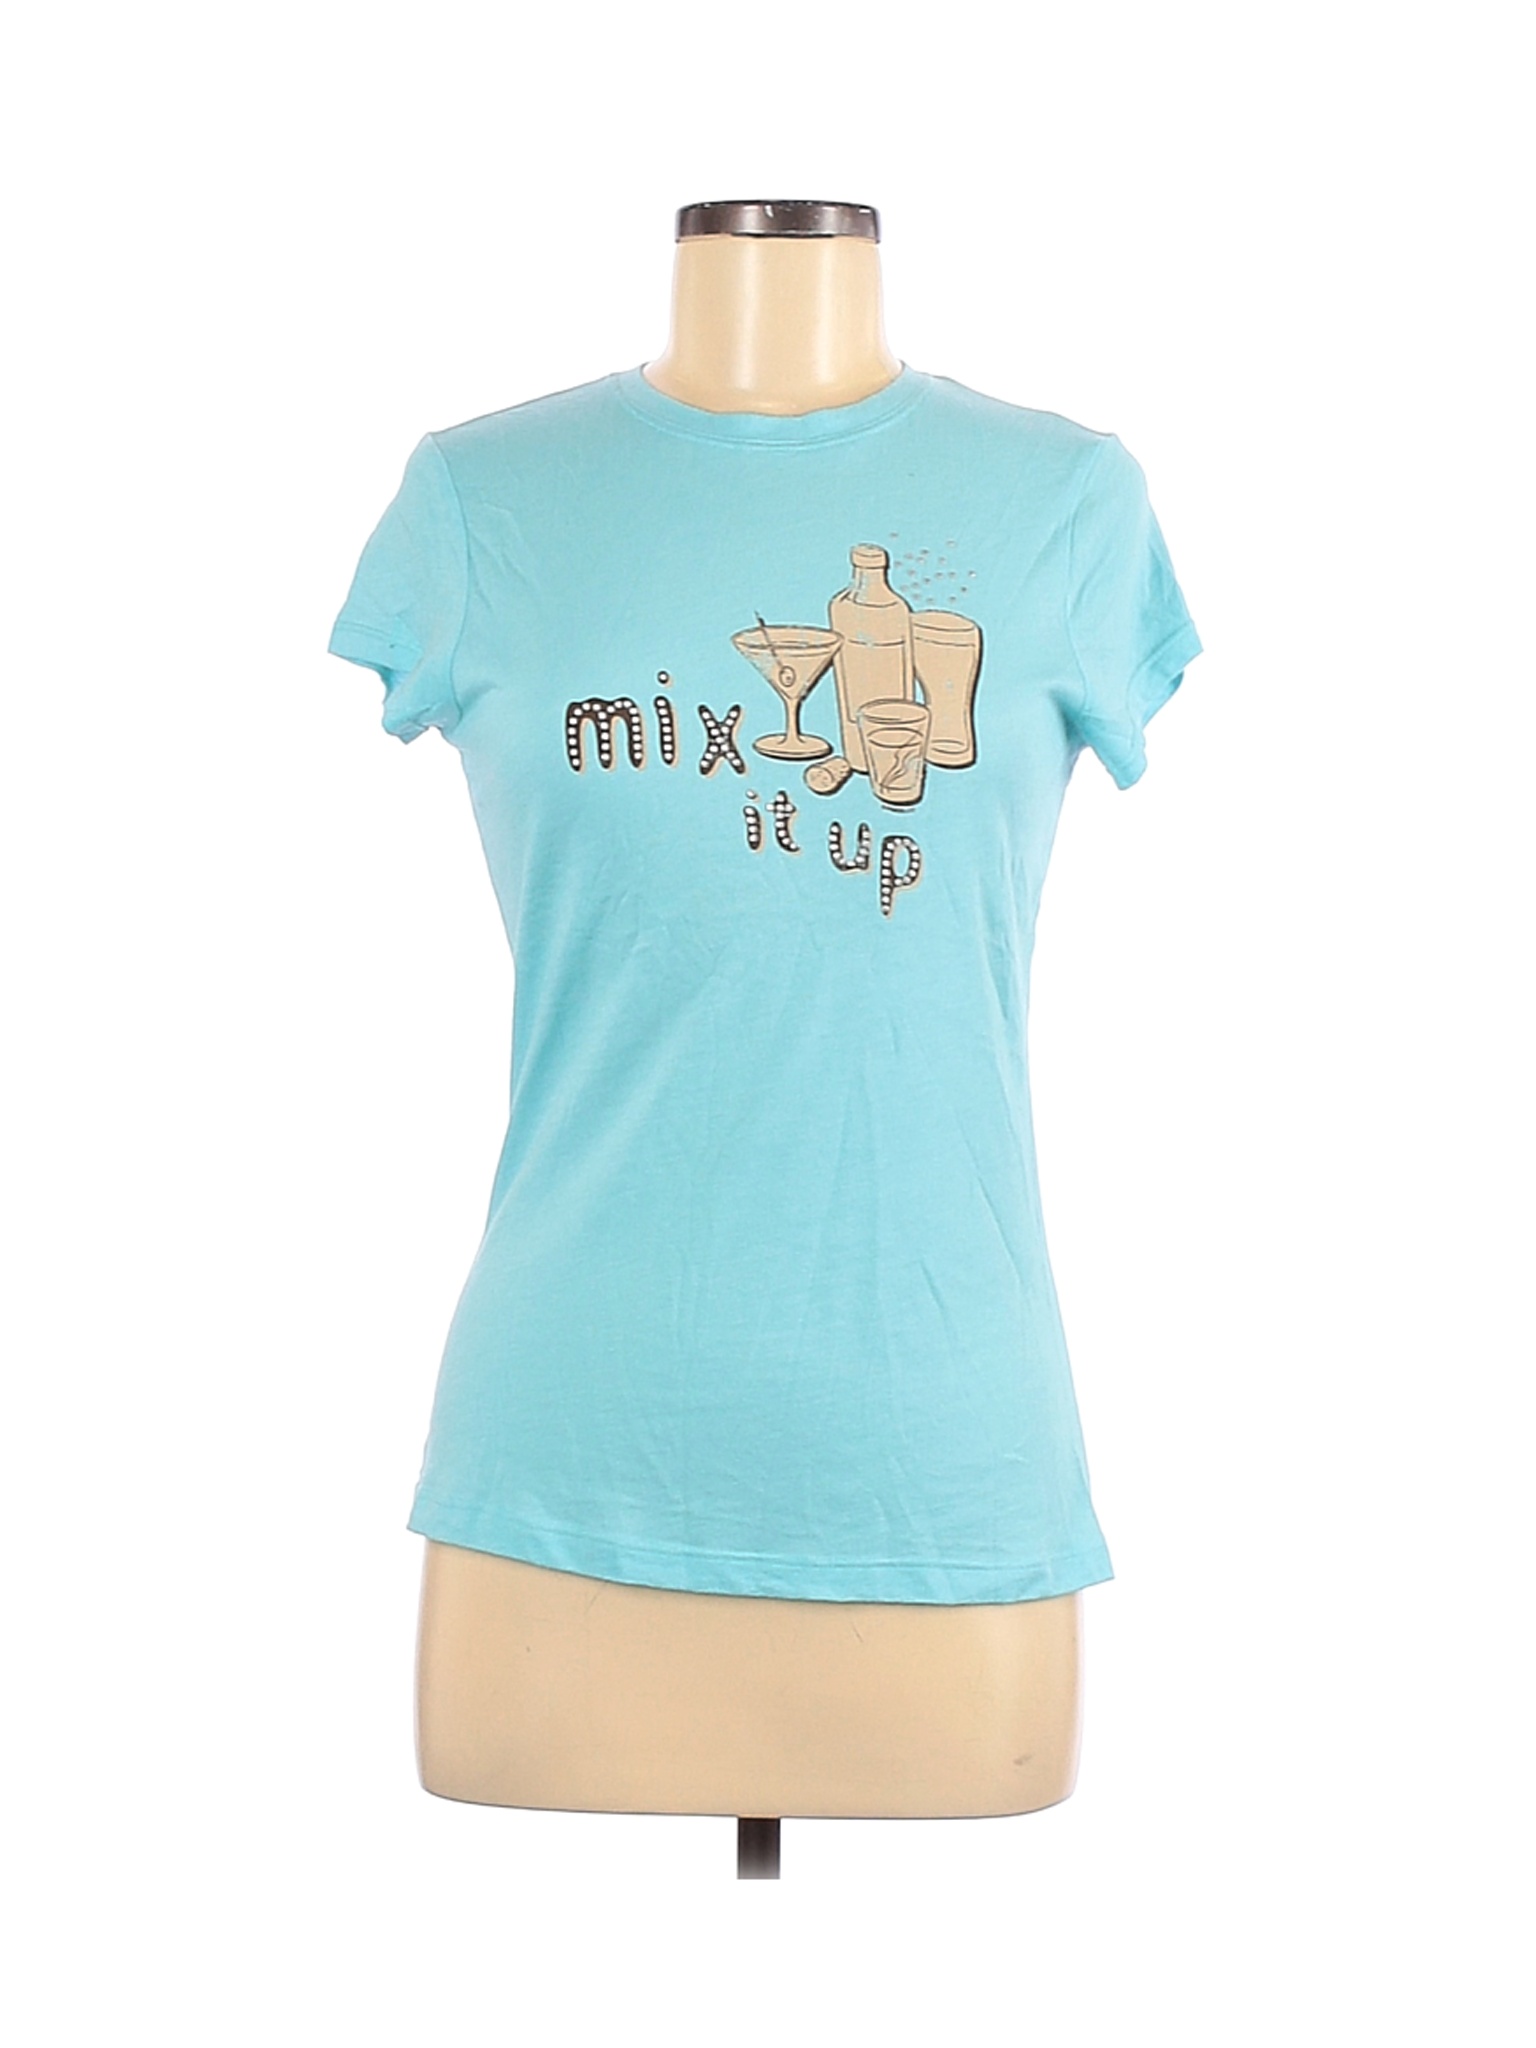 Maurices Women Blue Short Sleeve T-Shirt M | eBay